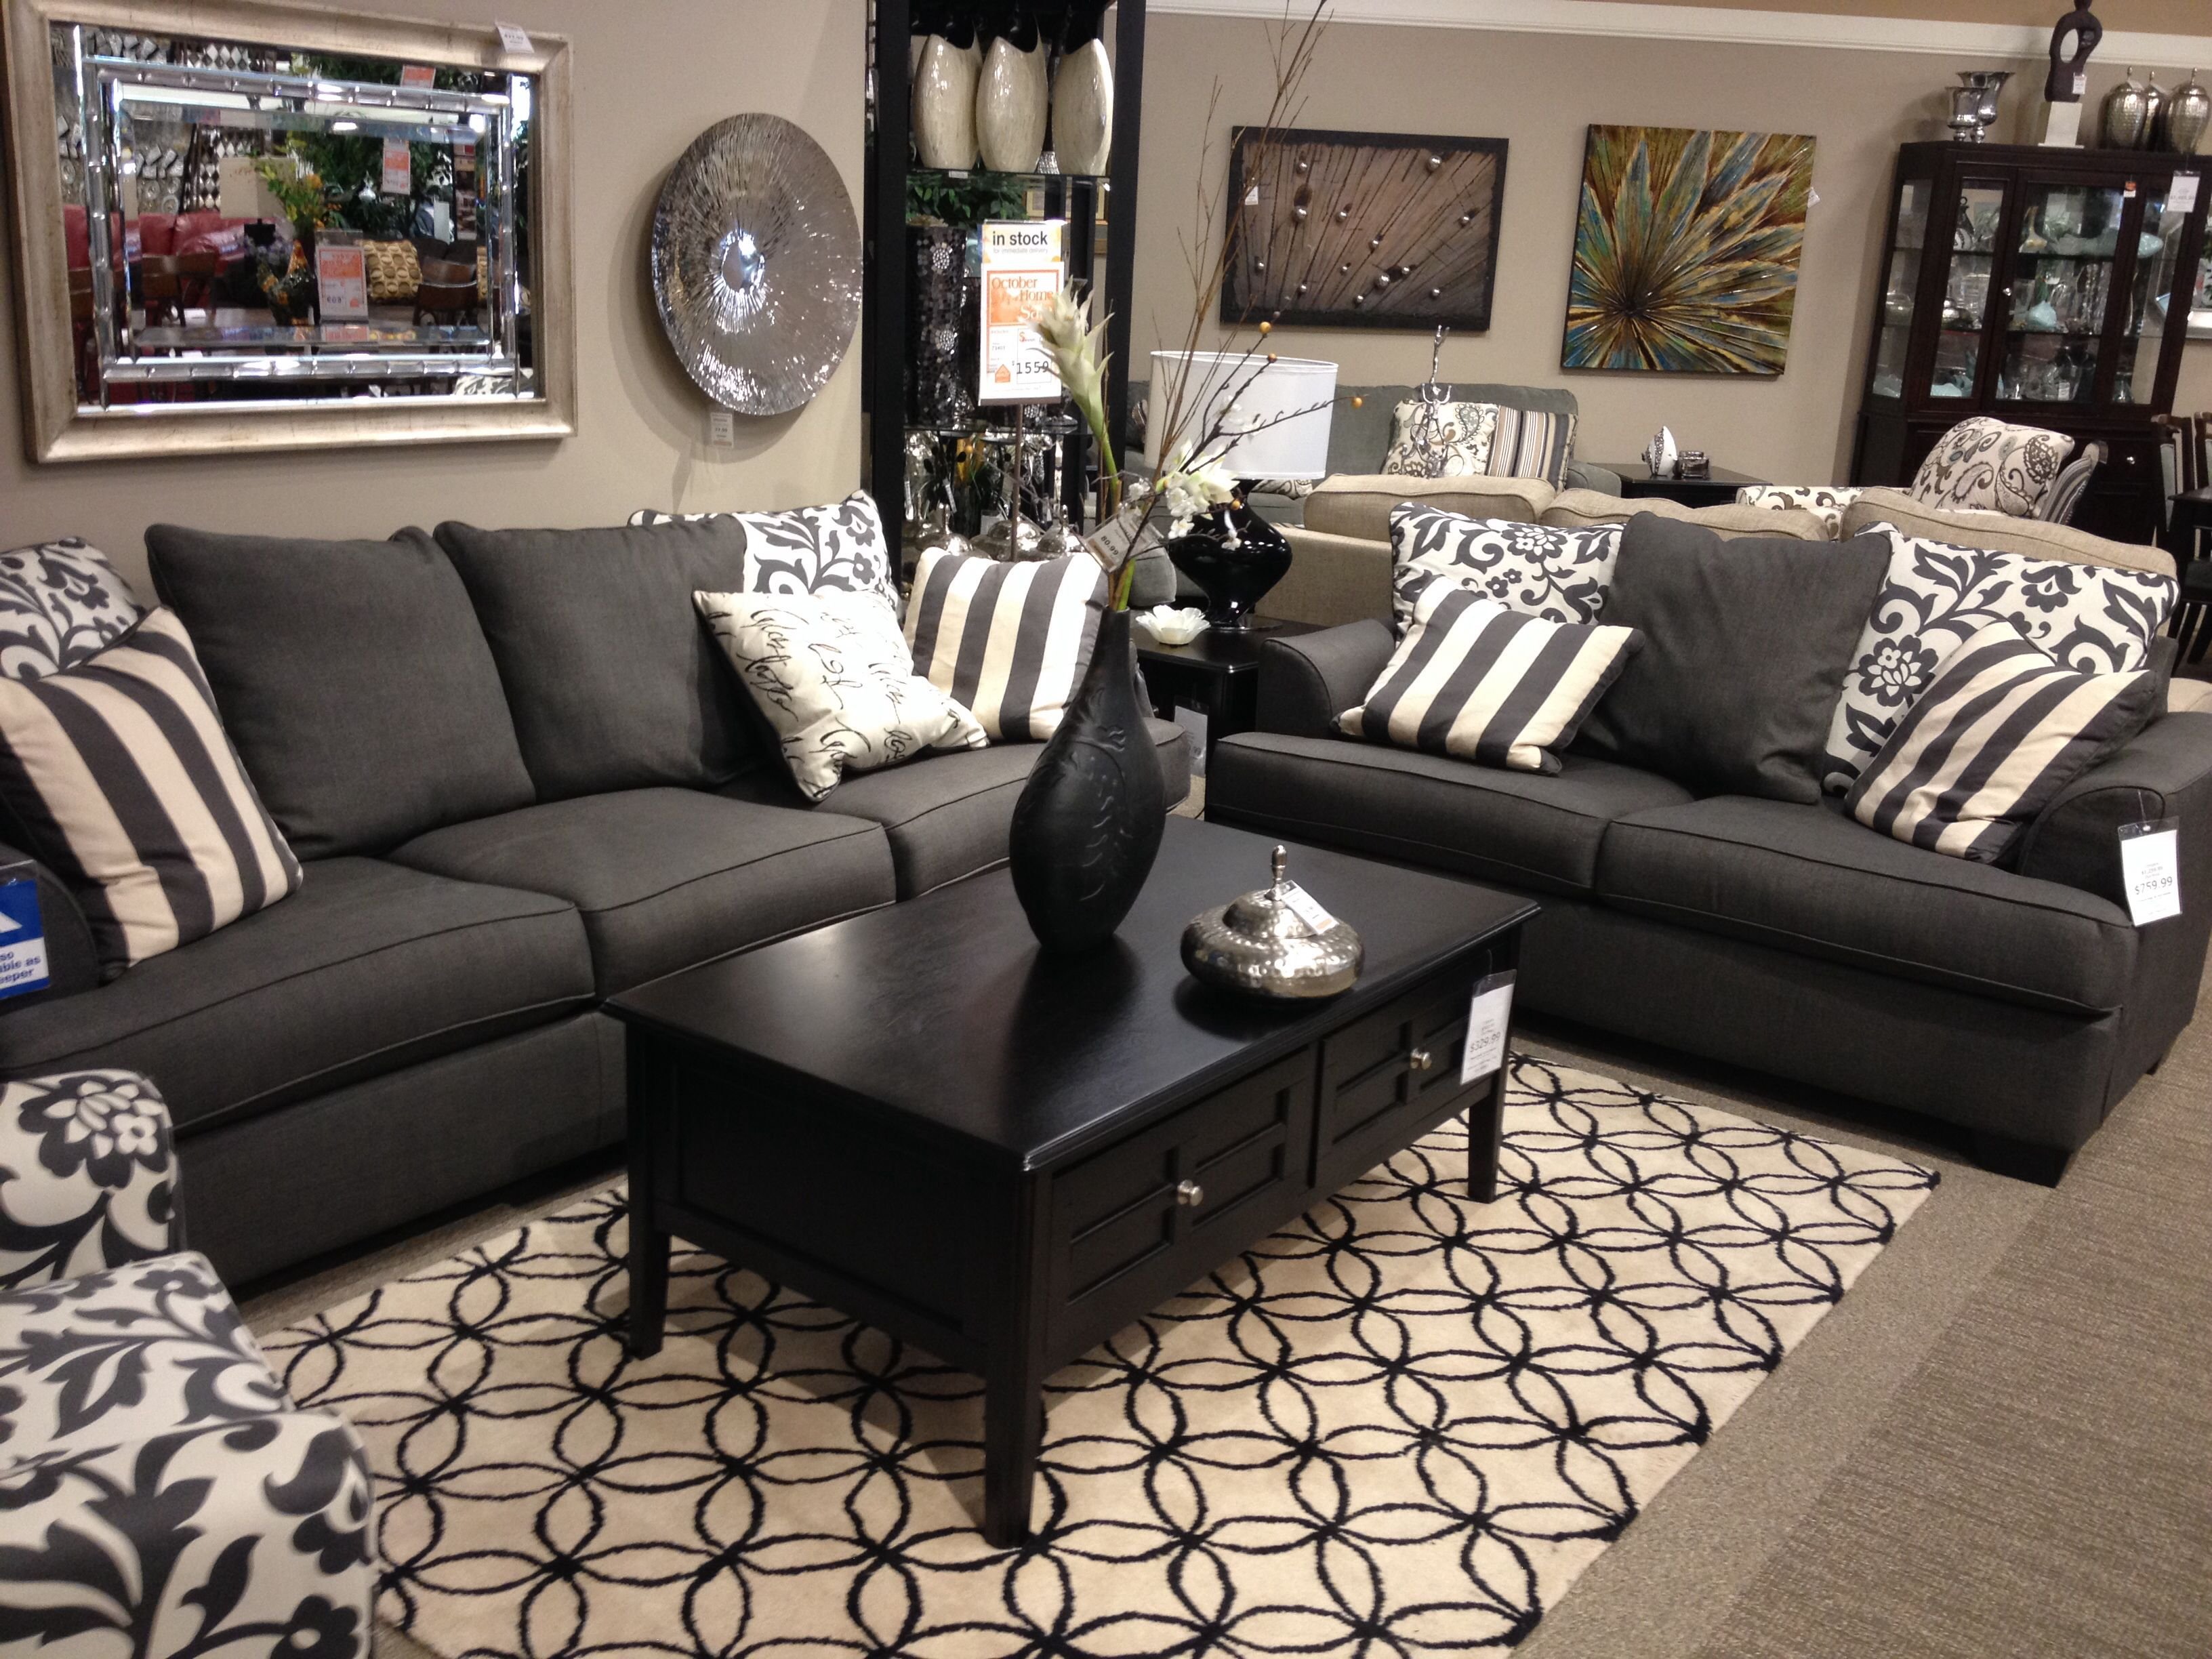 Черный диван в интерьере: материалы обивки, оттенки, формы, идеи дизайна, сочетания